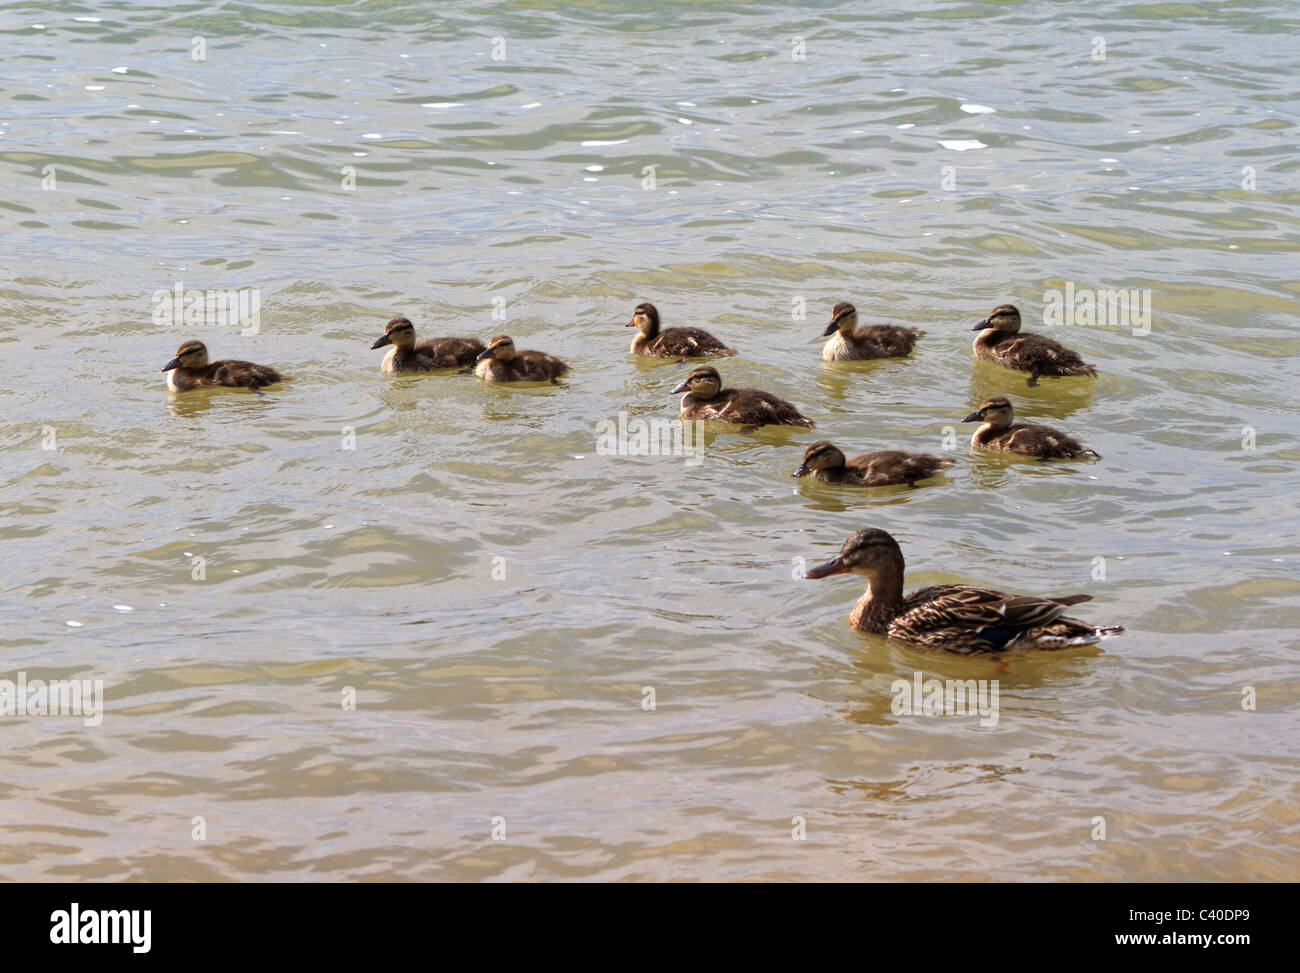 Weibliche Stockente Anas Platyrhynchos, mit Babys. Neun baby-Enten schwimmen am Rand des Sees mit ihrer Mutter. Stockfoto